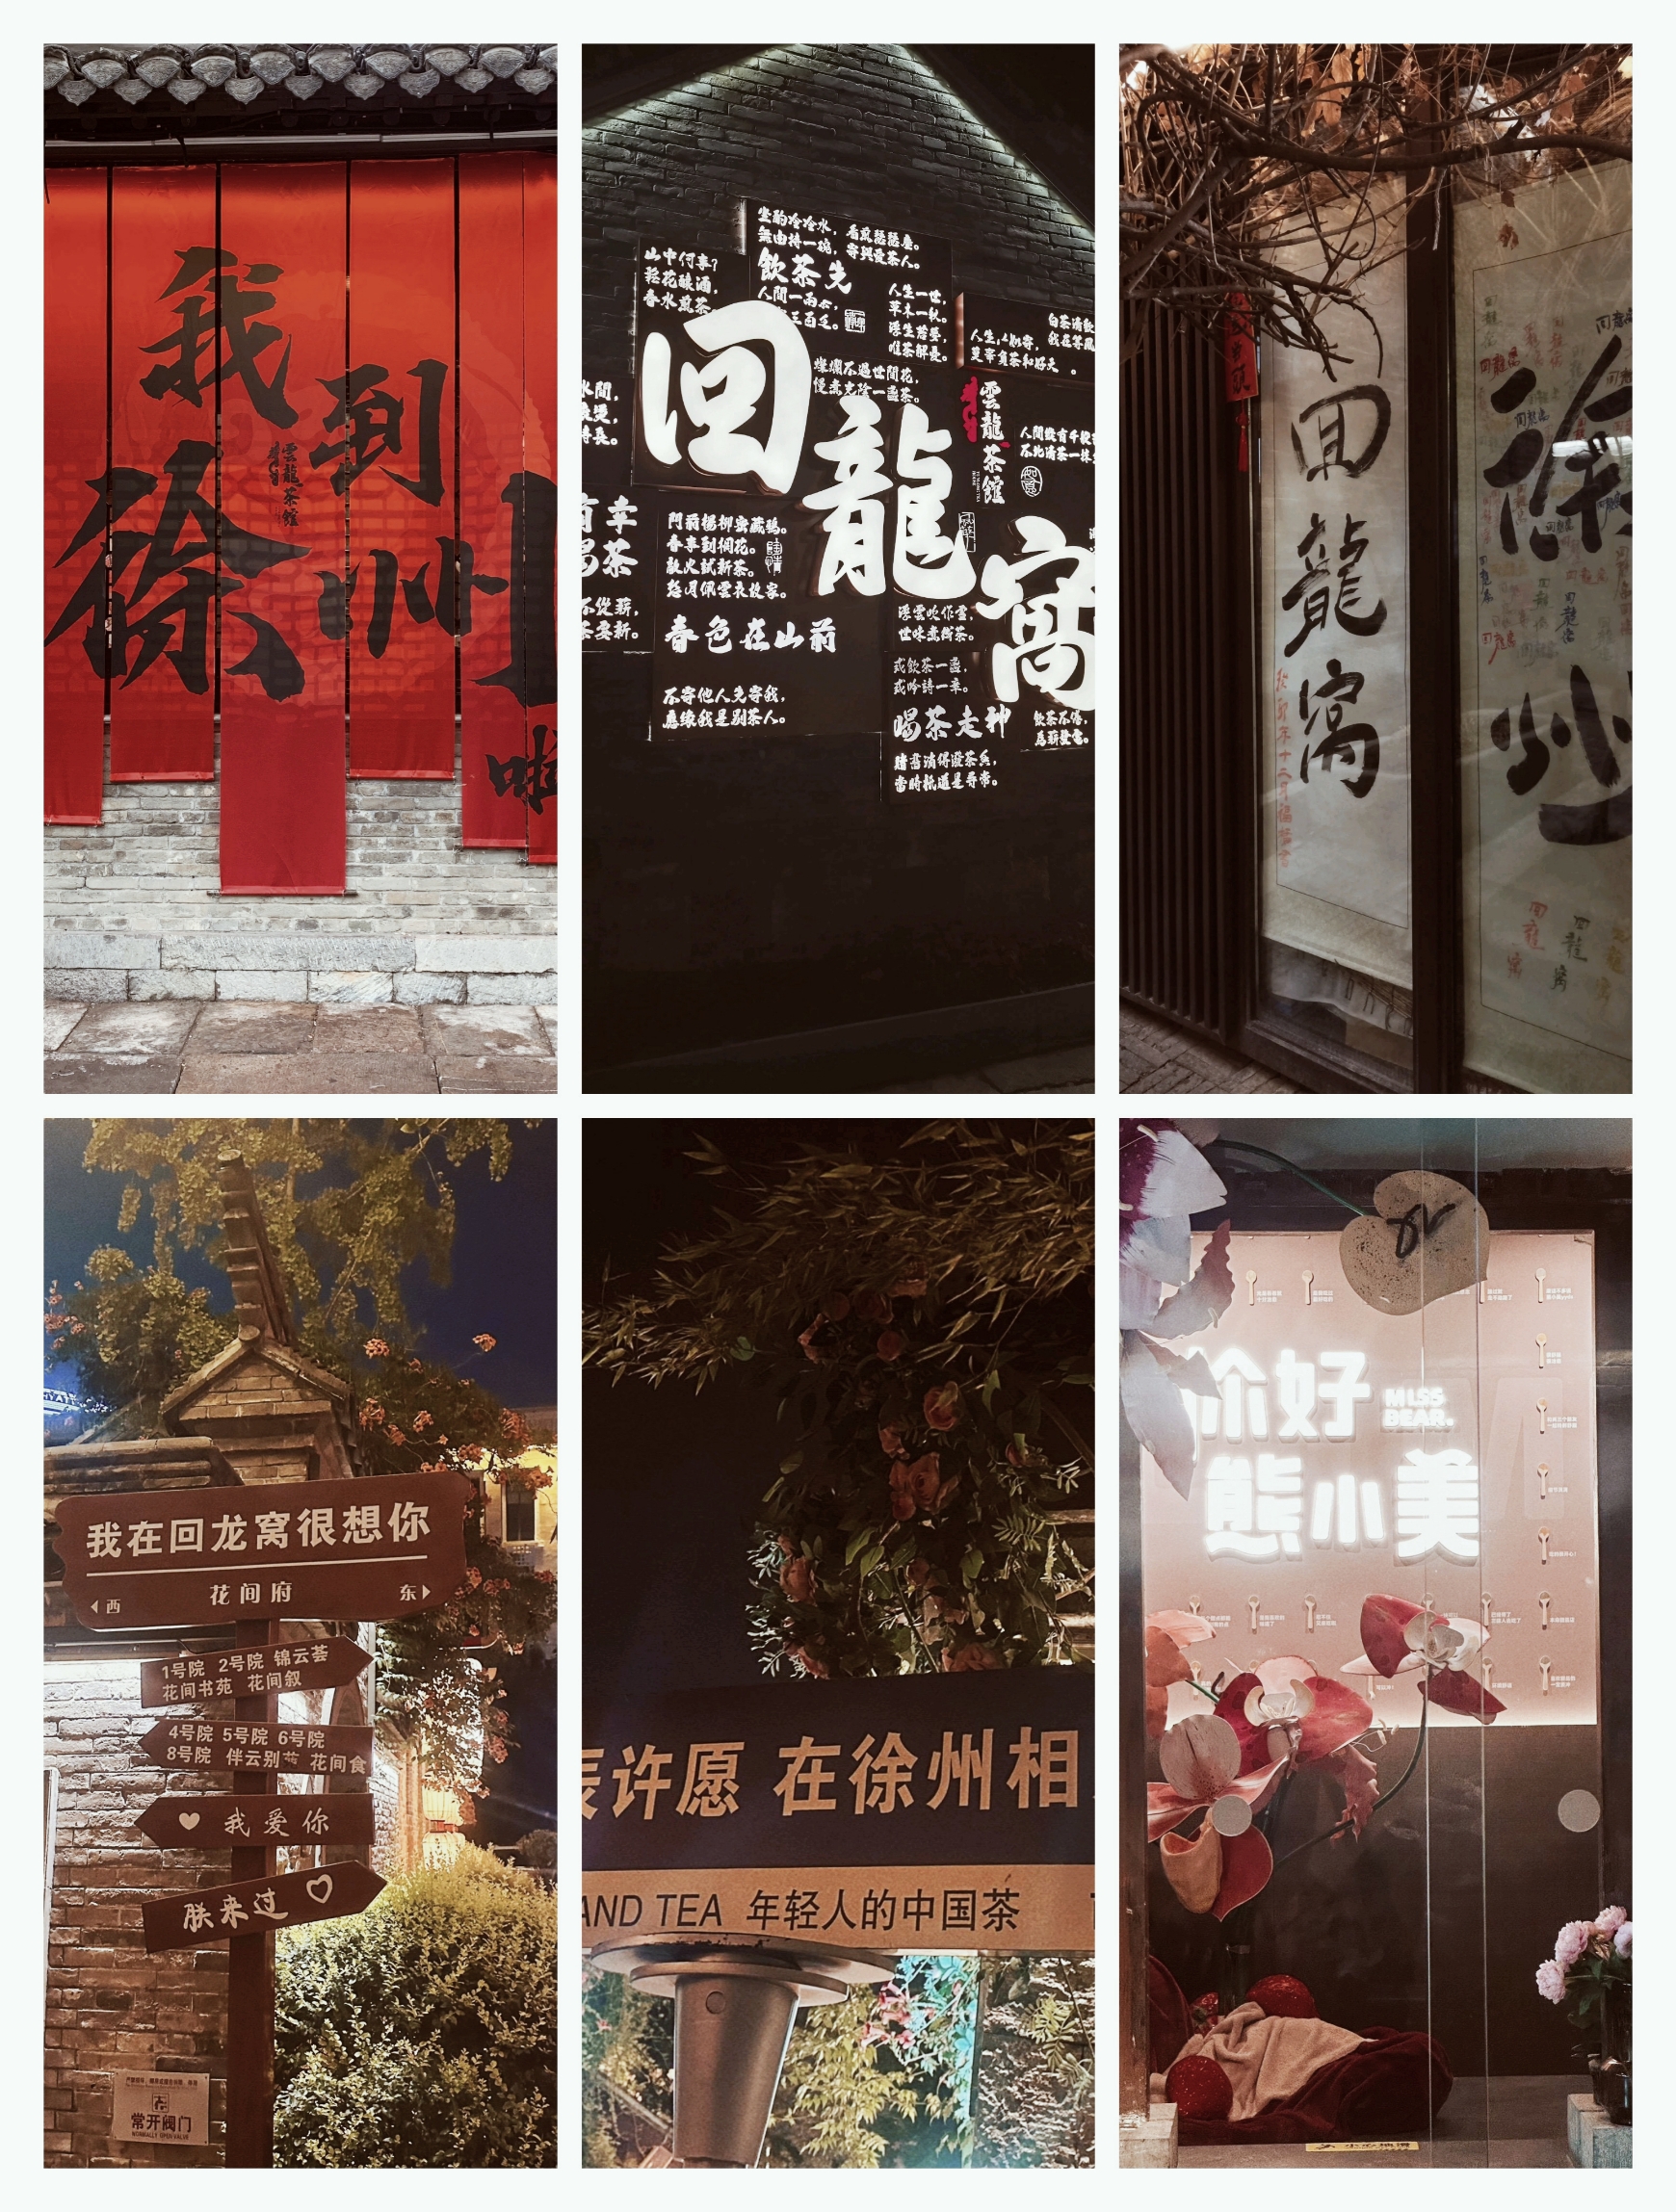 嘿，徐州这也有夜景超棒的网红大字墙啦~